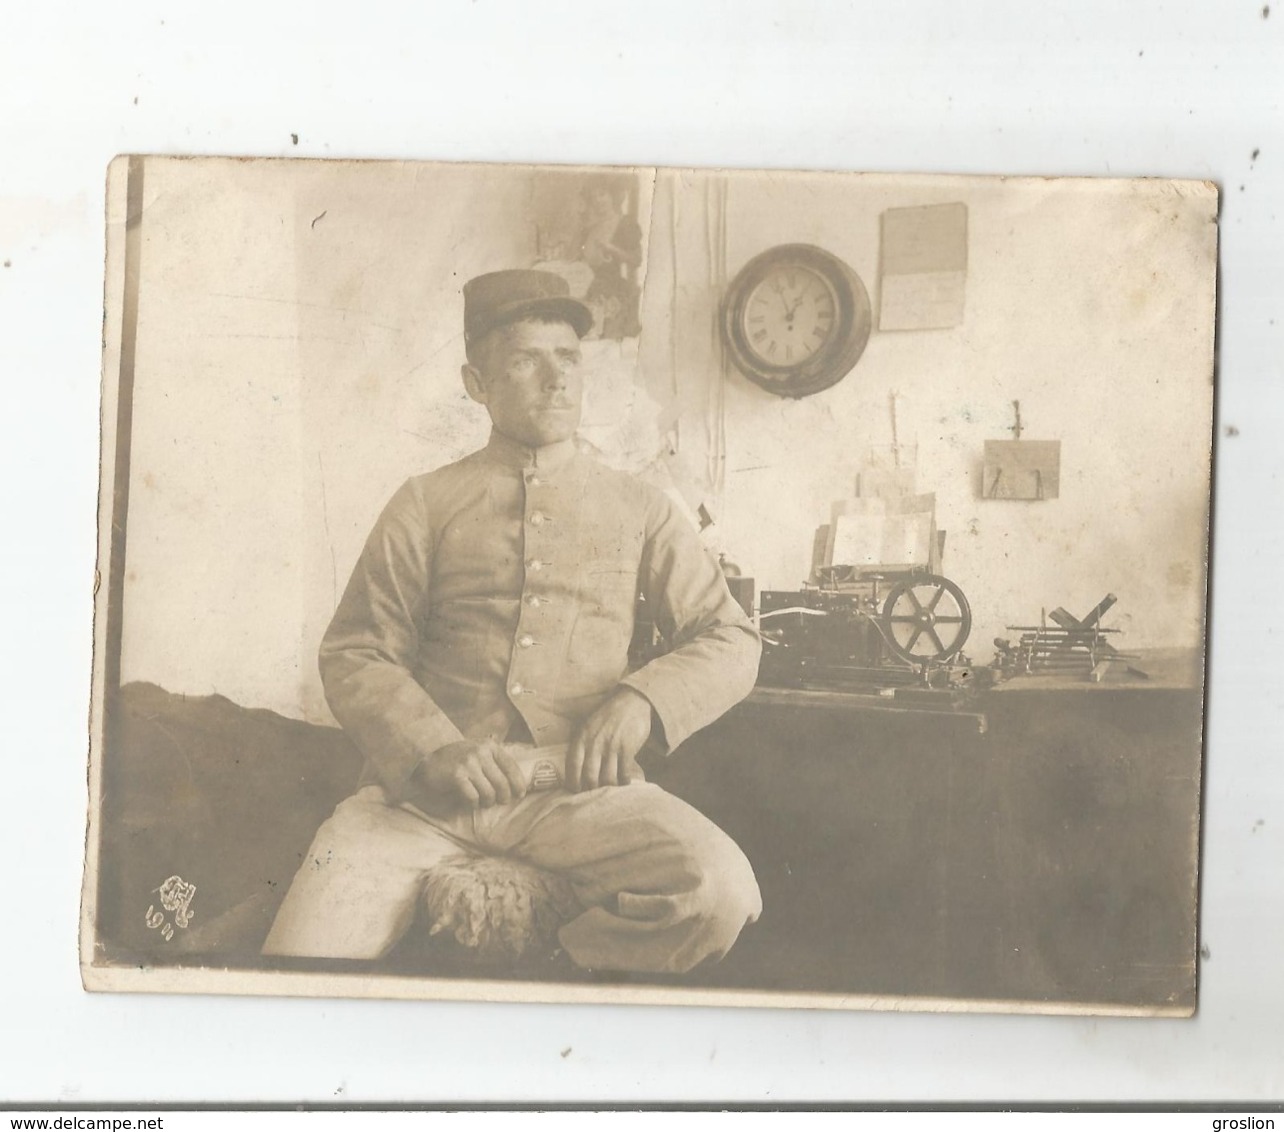 BOU DENIB (MAROC) PHOTO AVEC MILITAIRE FRANCAIS 28 11 1911 - Guerra, Militares